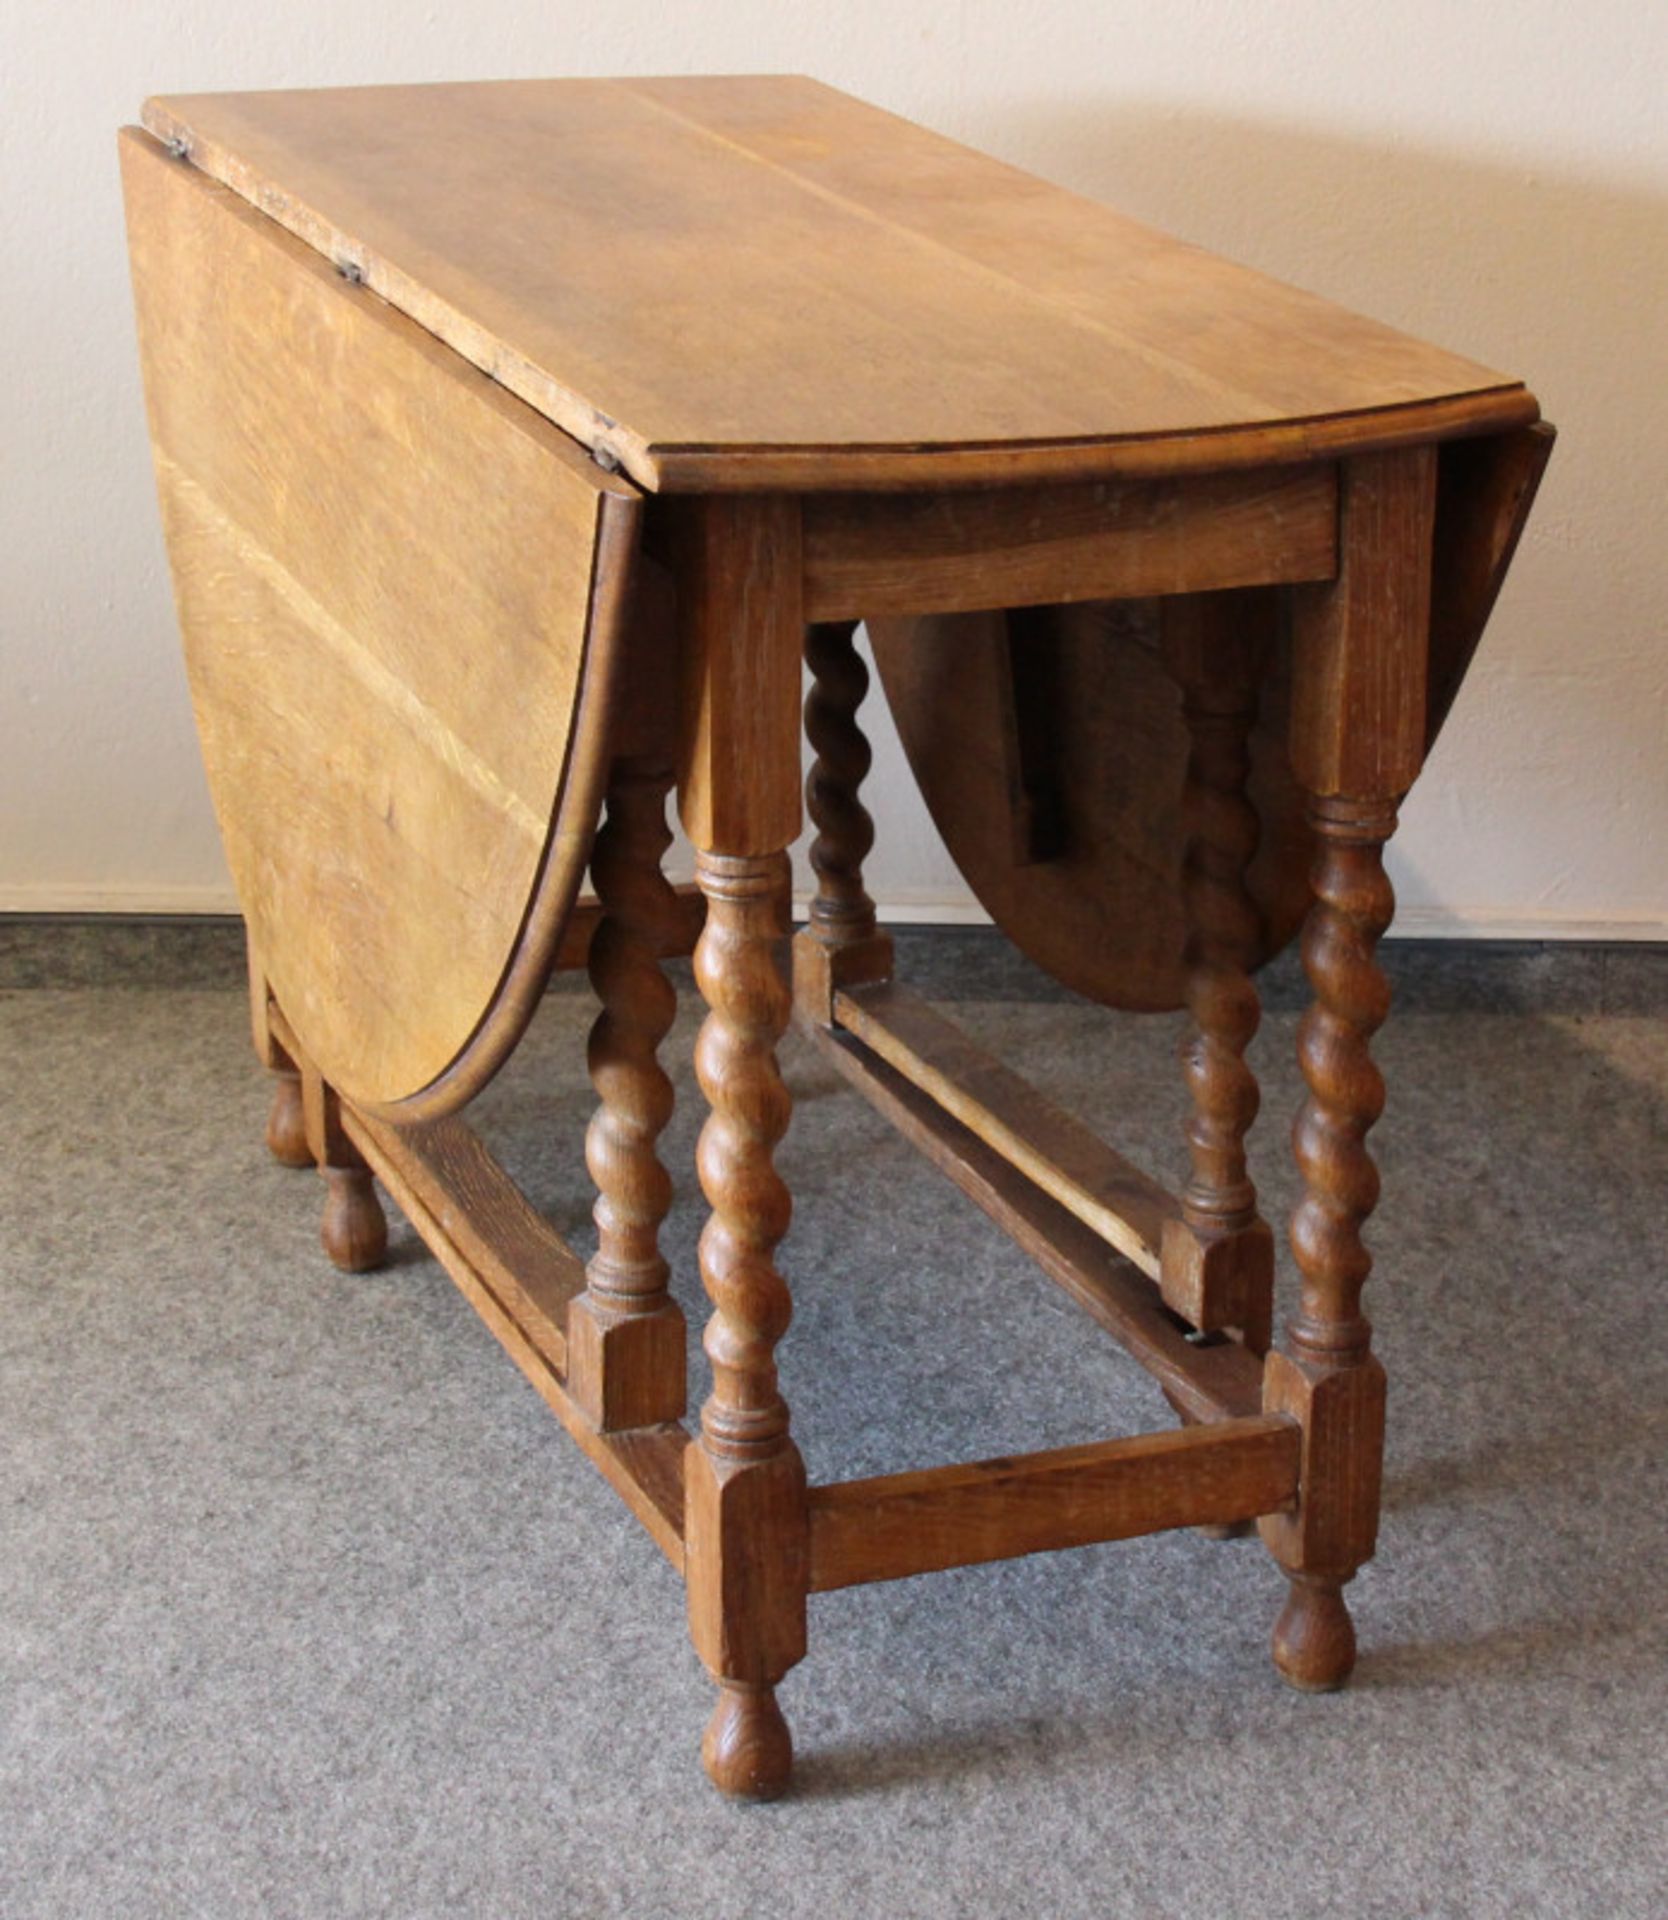 Englischer Gateleg Table, Eiche/hell, um 1910beidseitig abklappbar, originaler Zustand, - Bild 3 aus 3